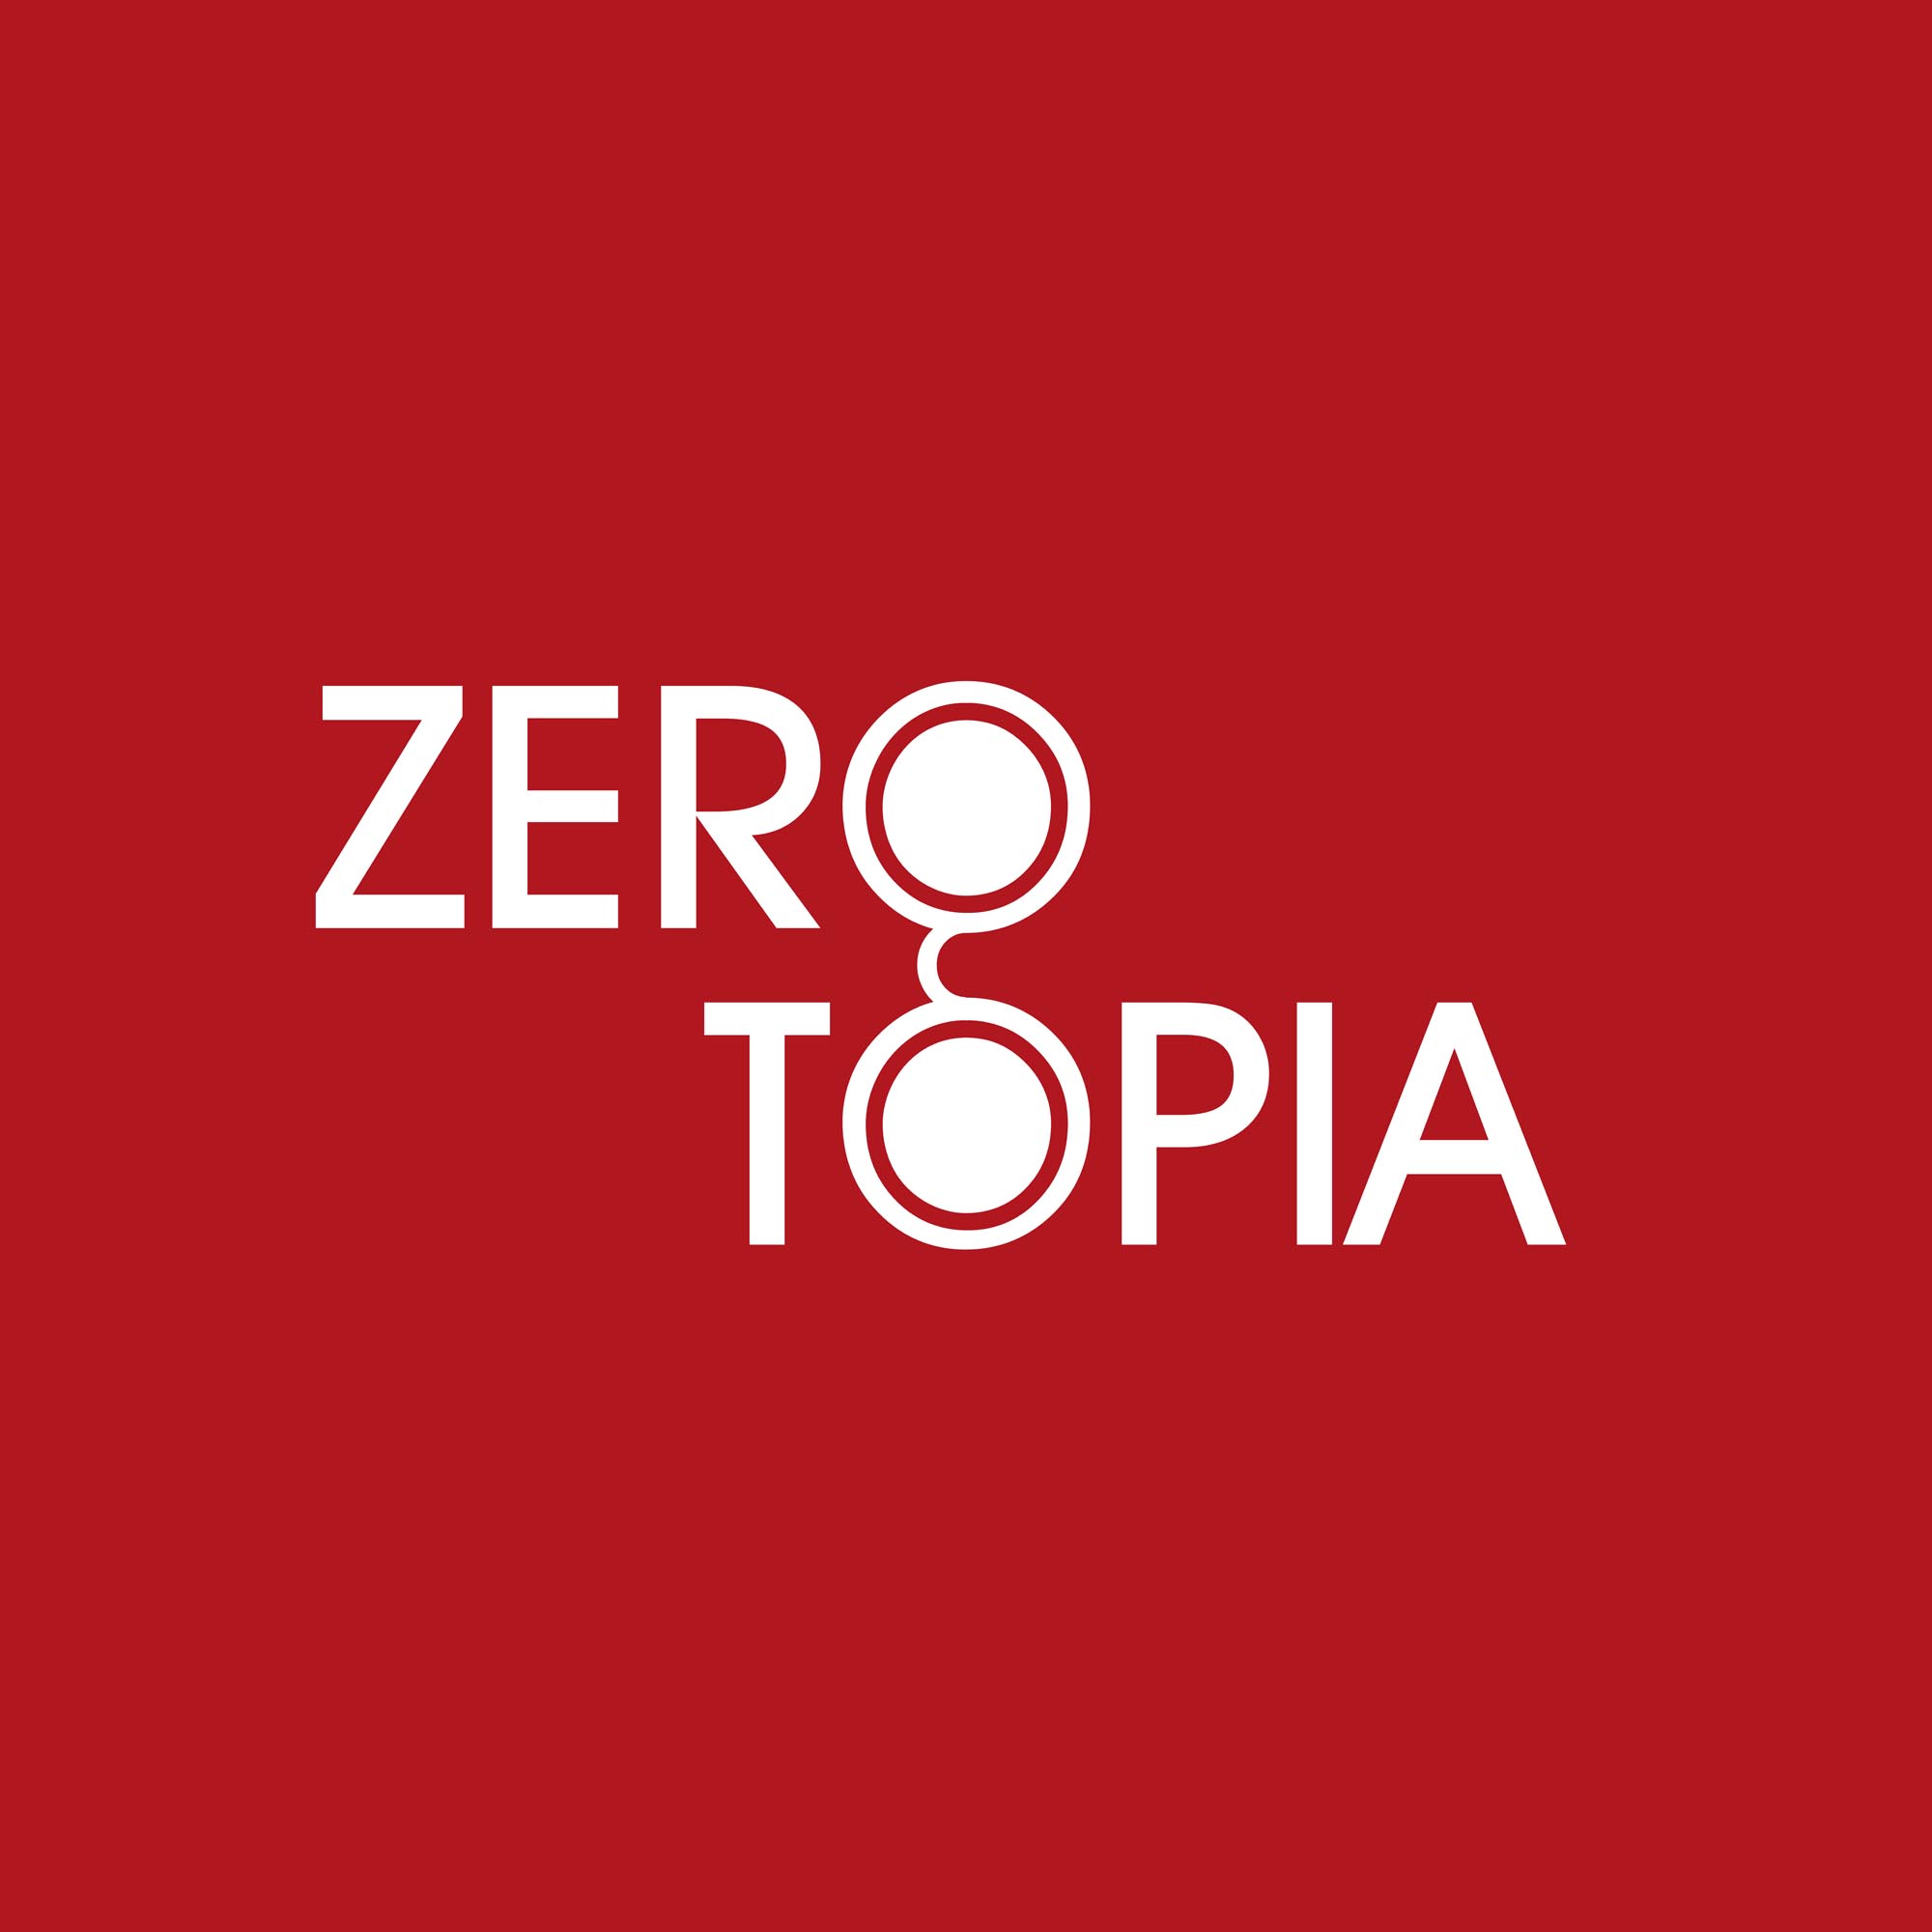 ZeroTopia